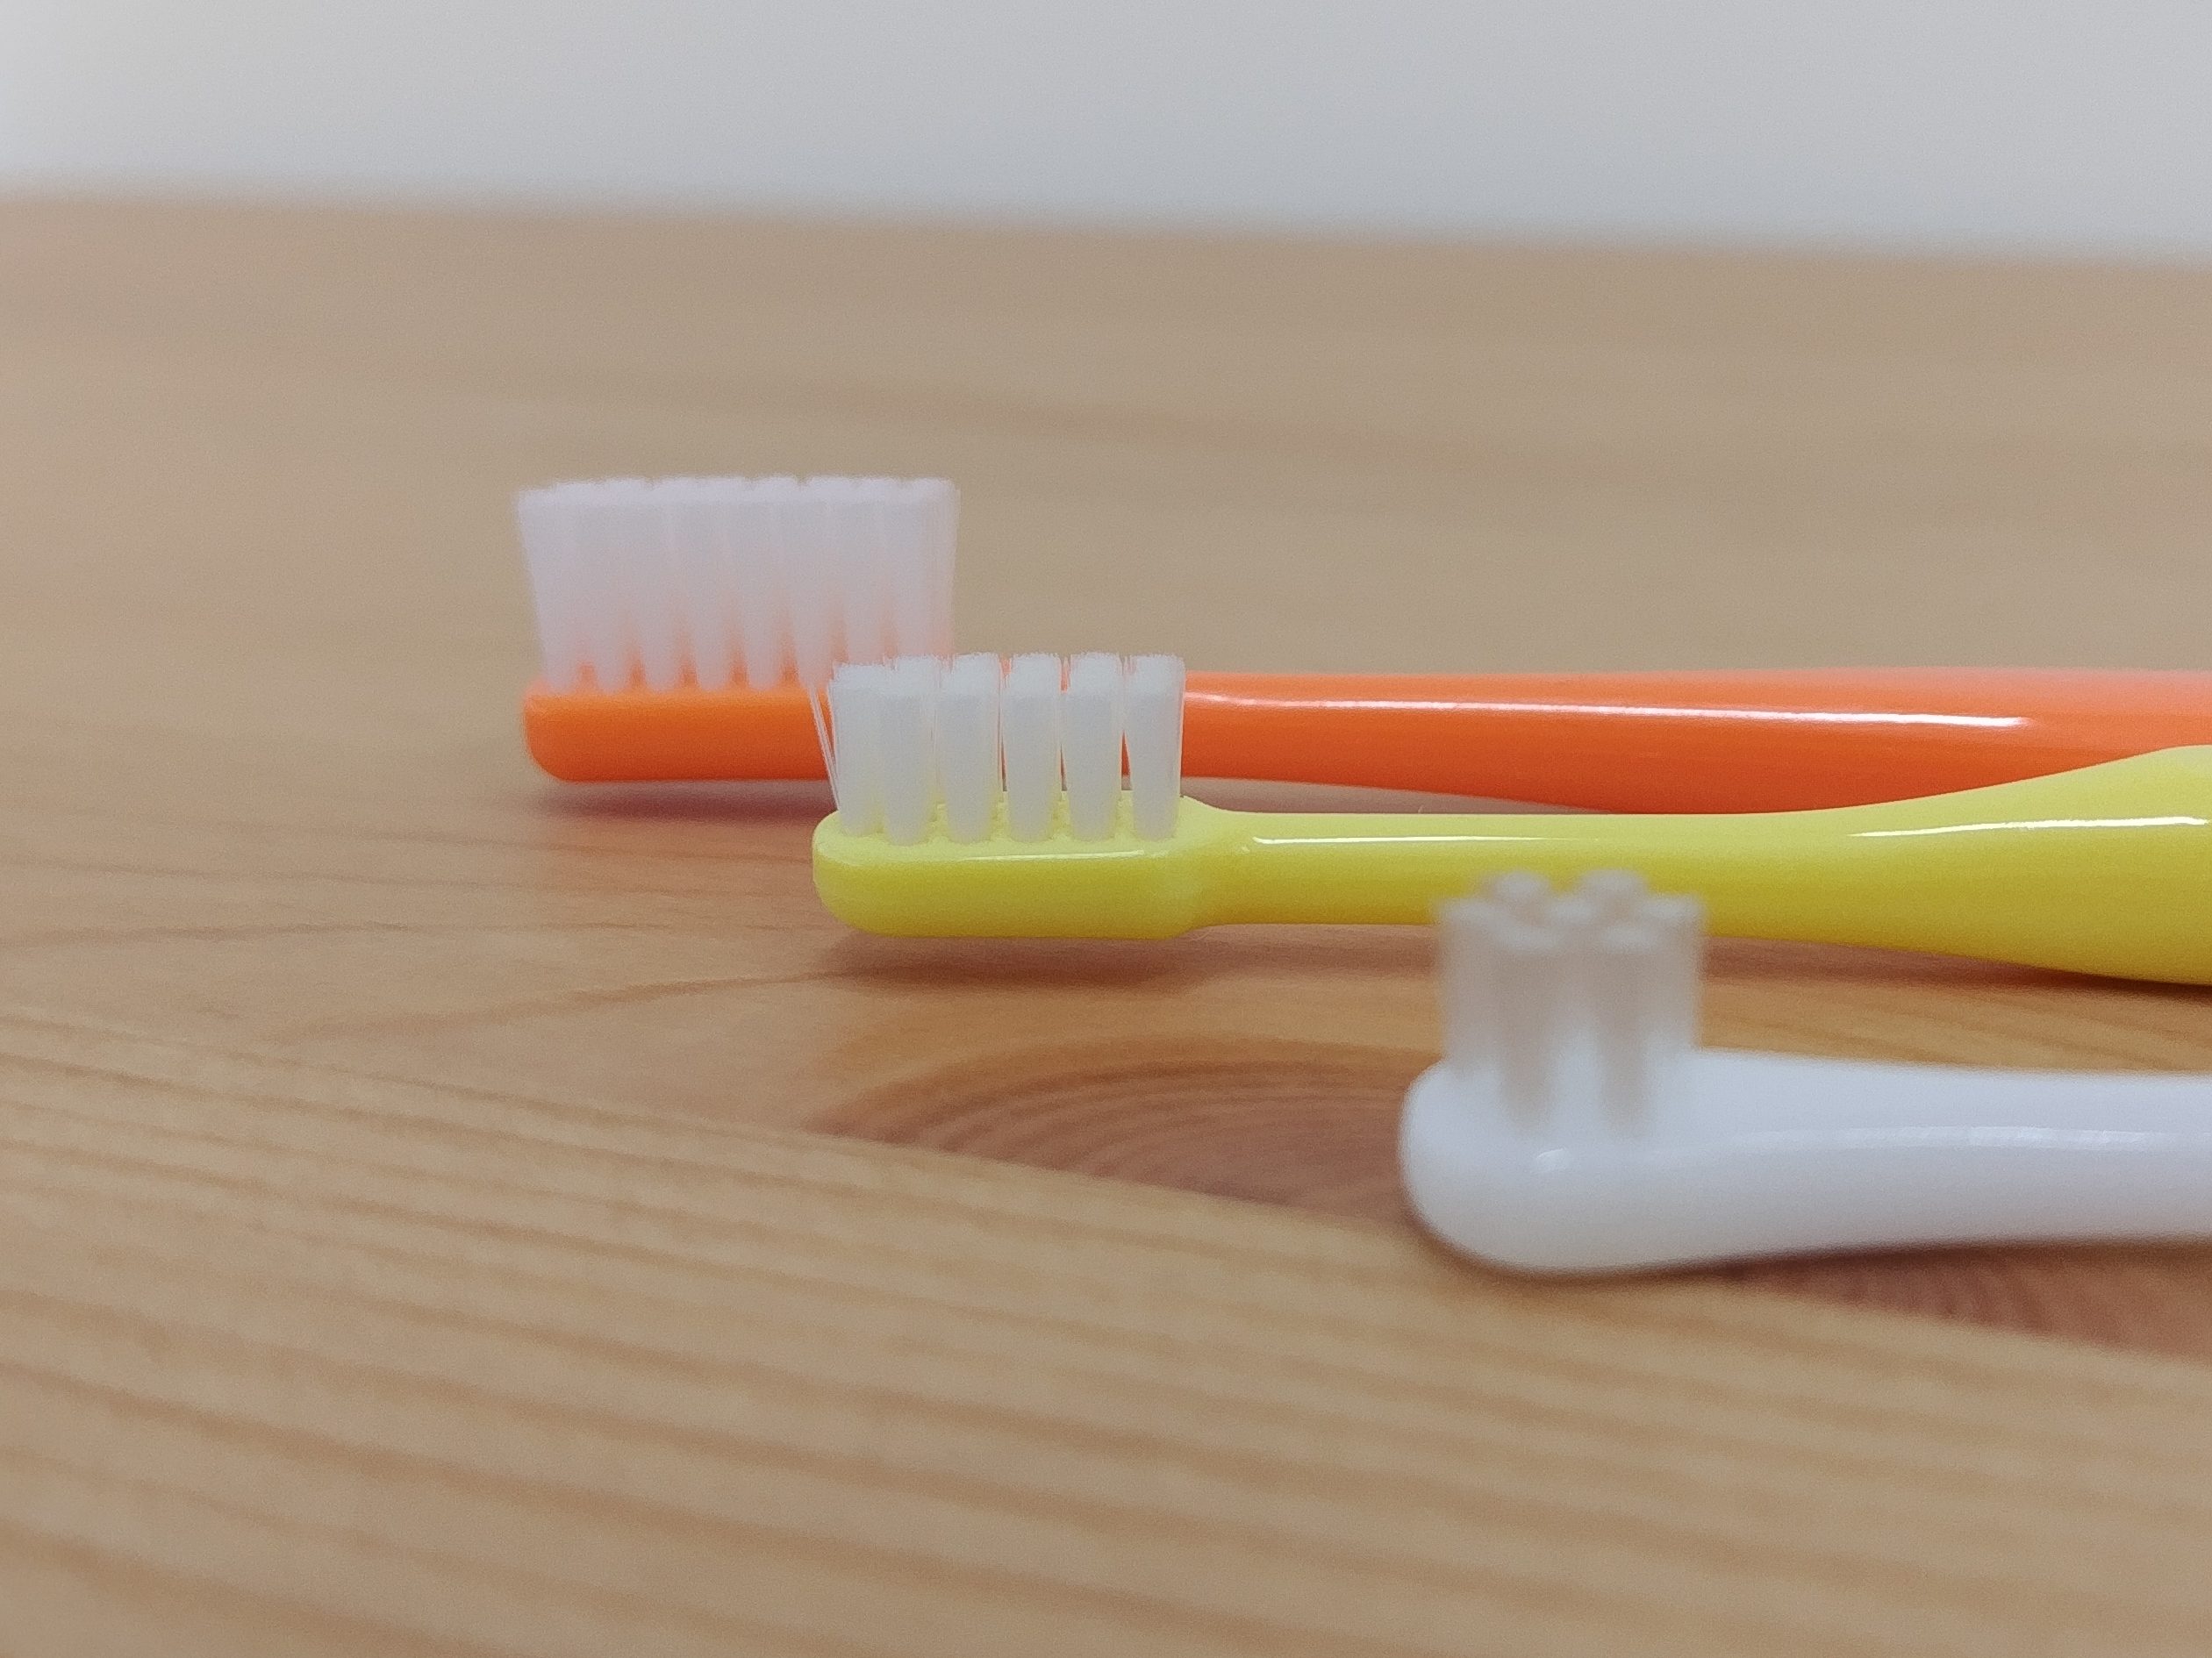 ３本の歯ブラシの写真、毛の長さの比較用